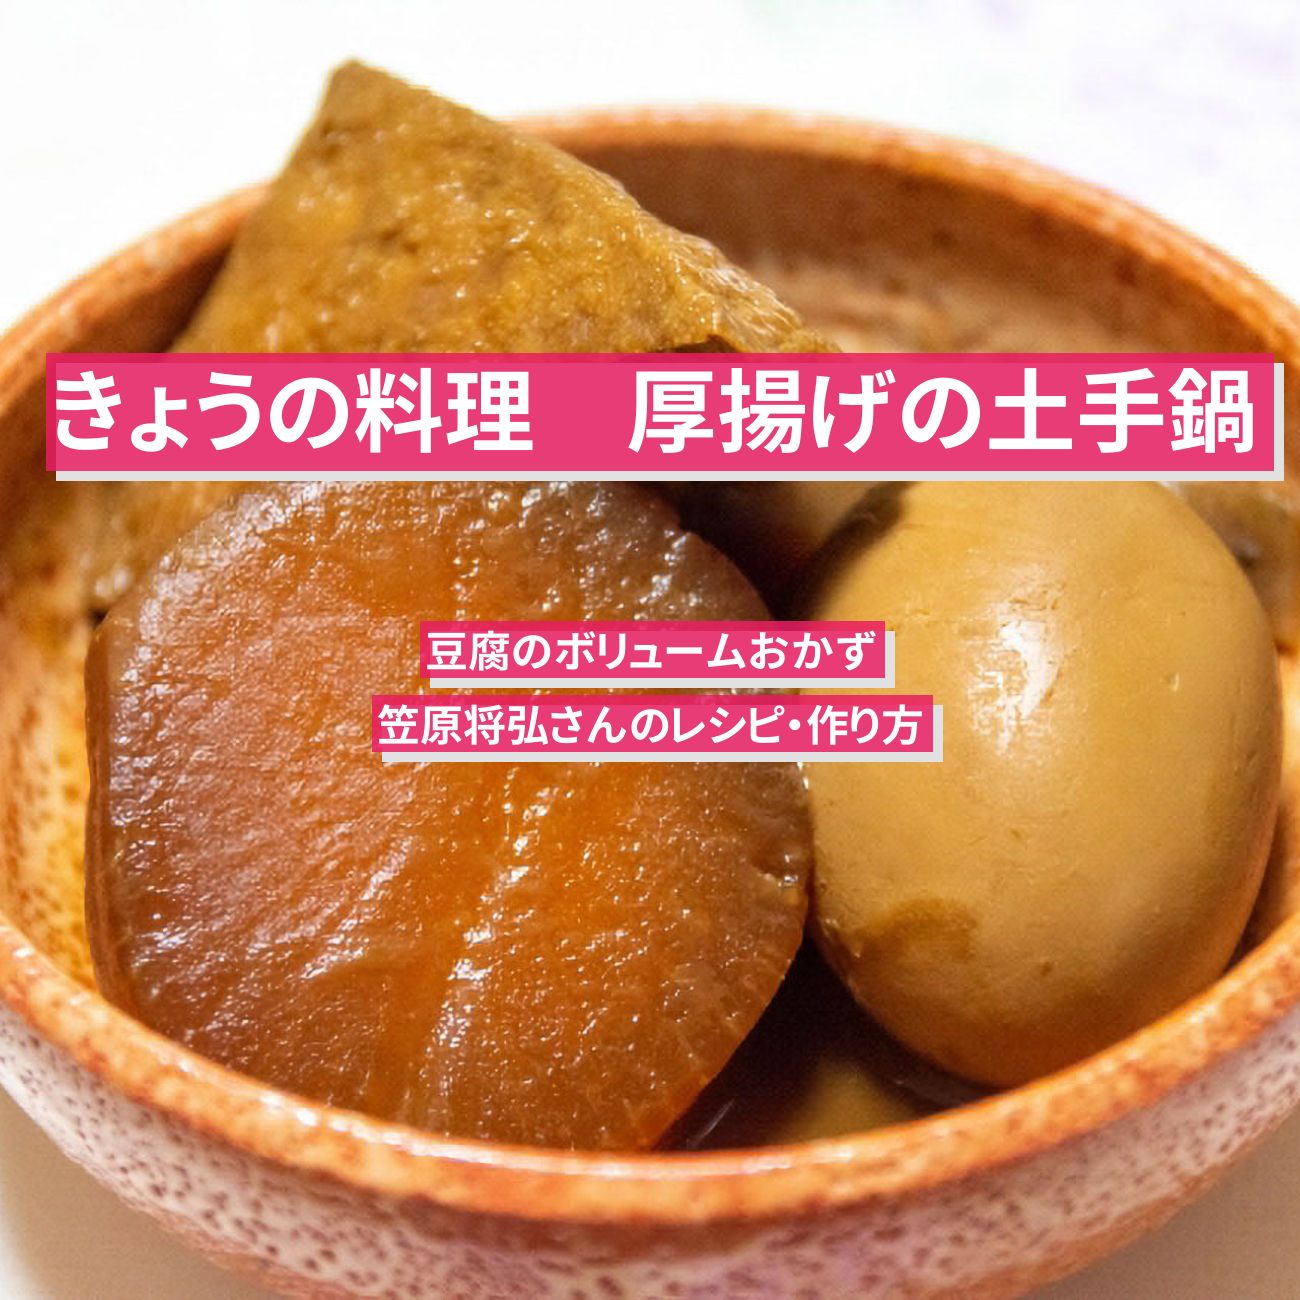 【きょうの料理】『厚揚げの土手鍋』笠原将弘さんのレシピ・作り方